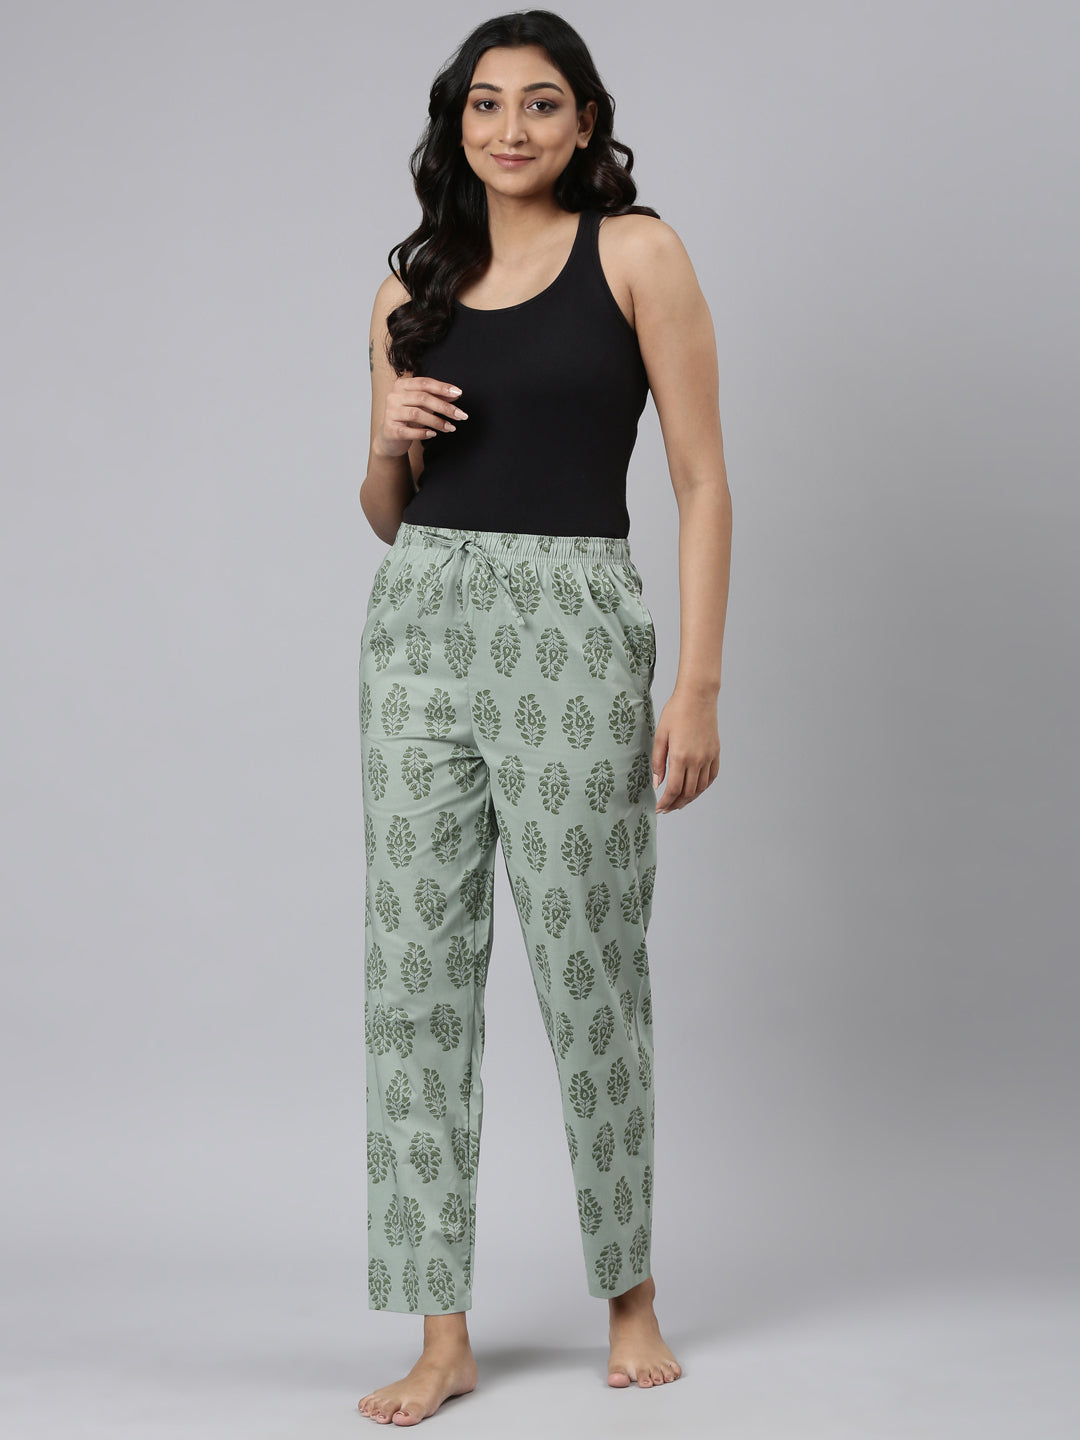 Women Printed Greens Cotton Knit Lounge Pants